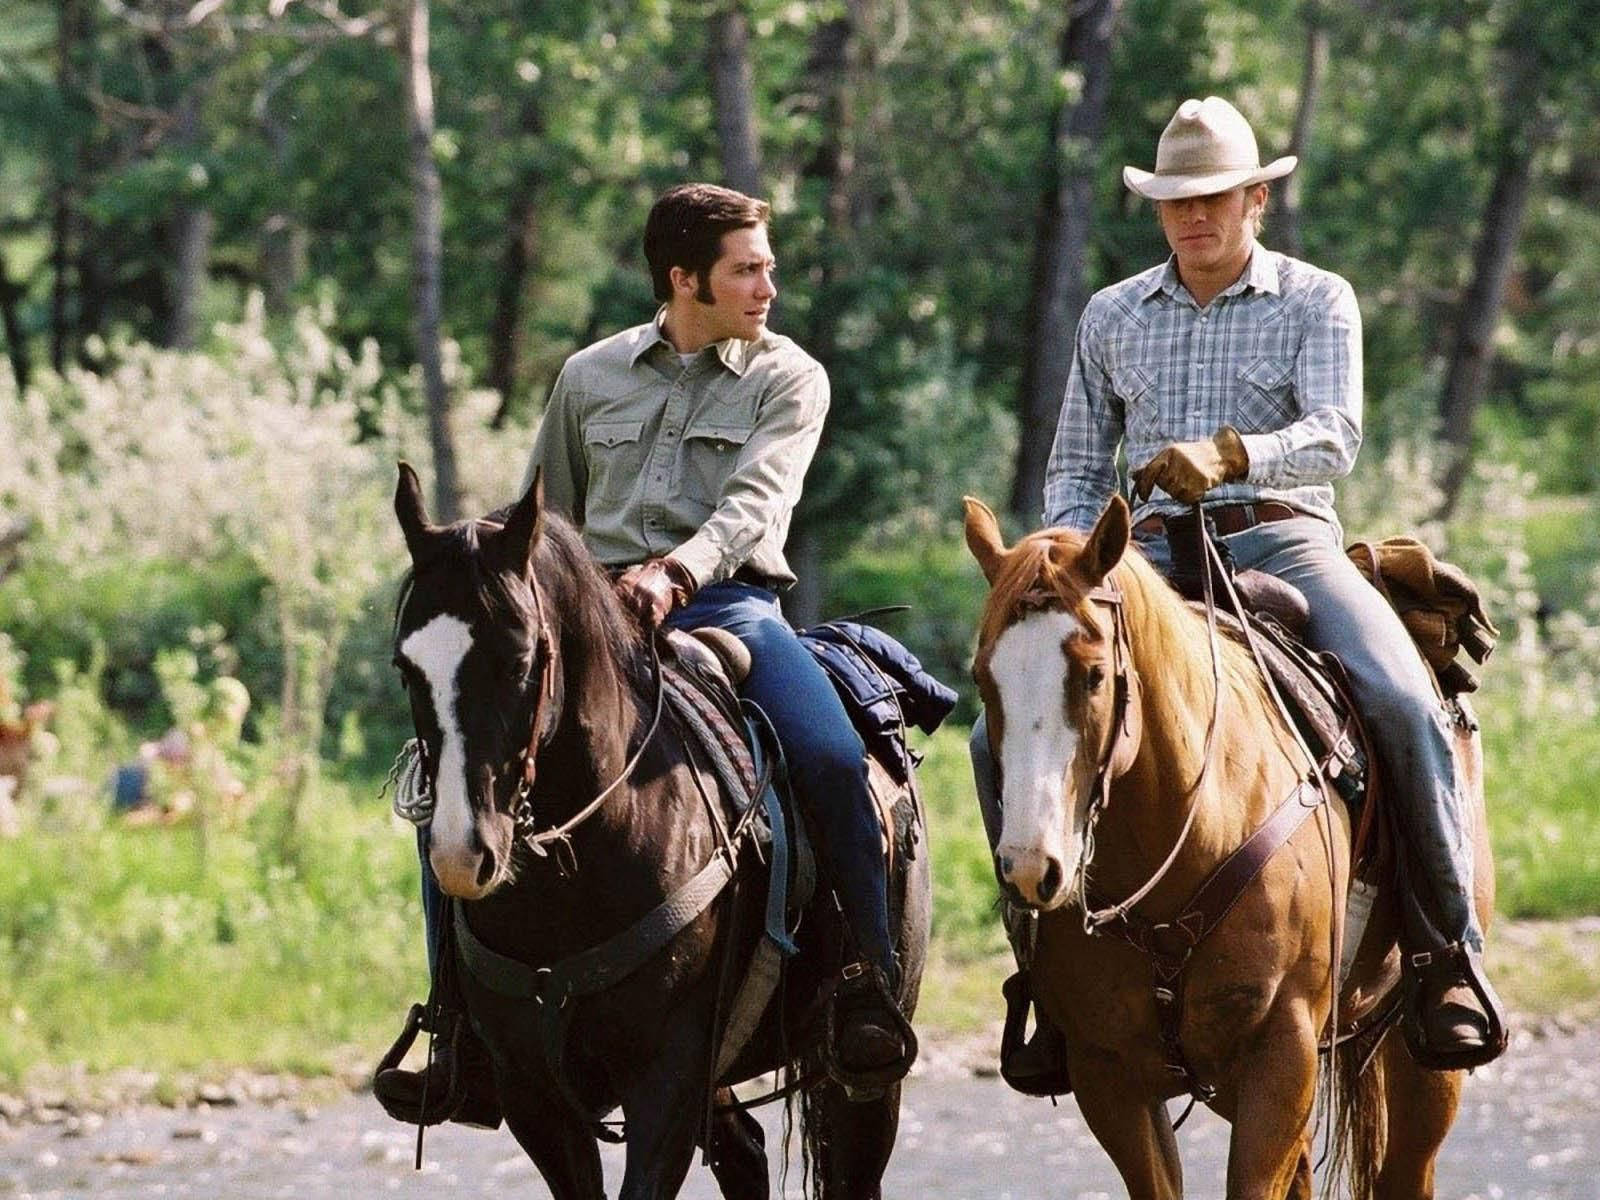 Tag et billede af det farverige landskab fra filmen 'Brokeback Mountain' mens heste ridende i forgrunden. Wallpaper